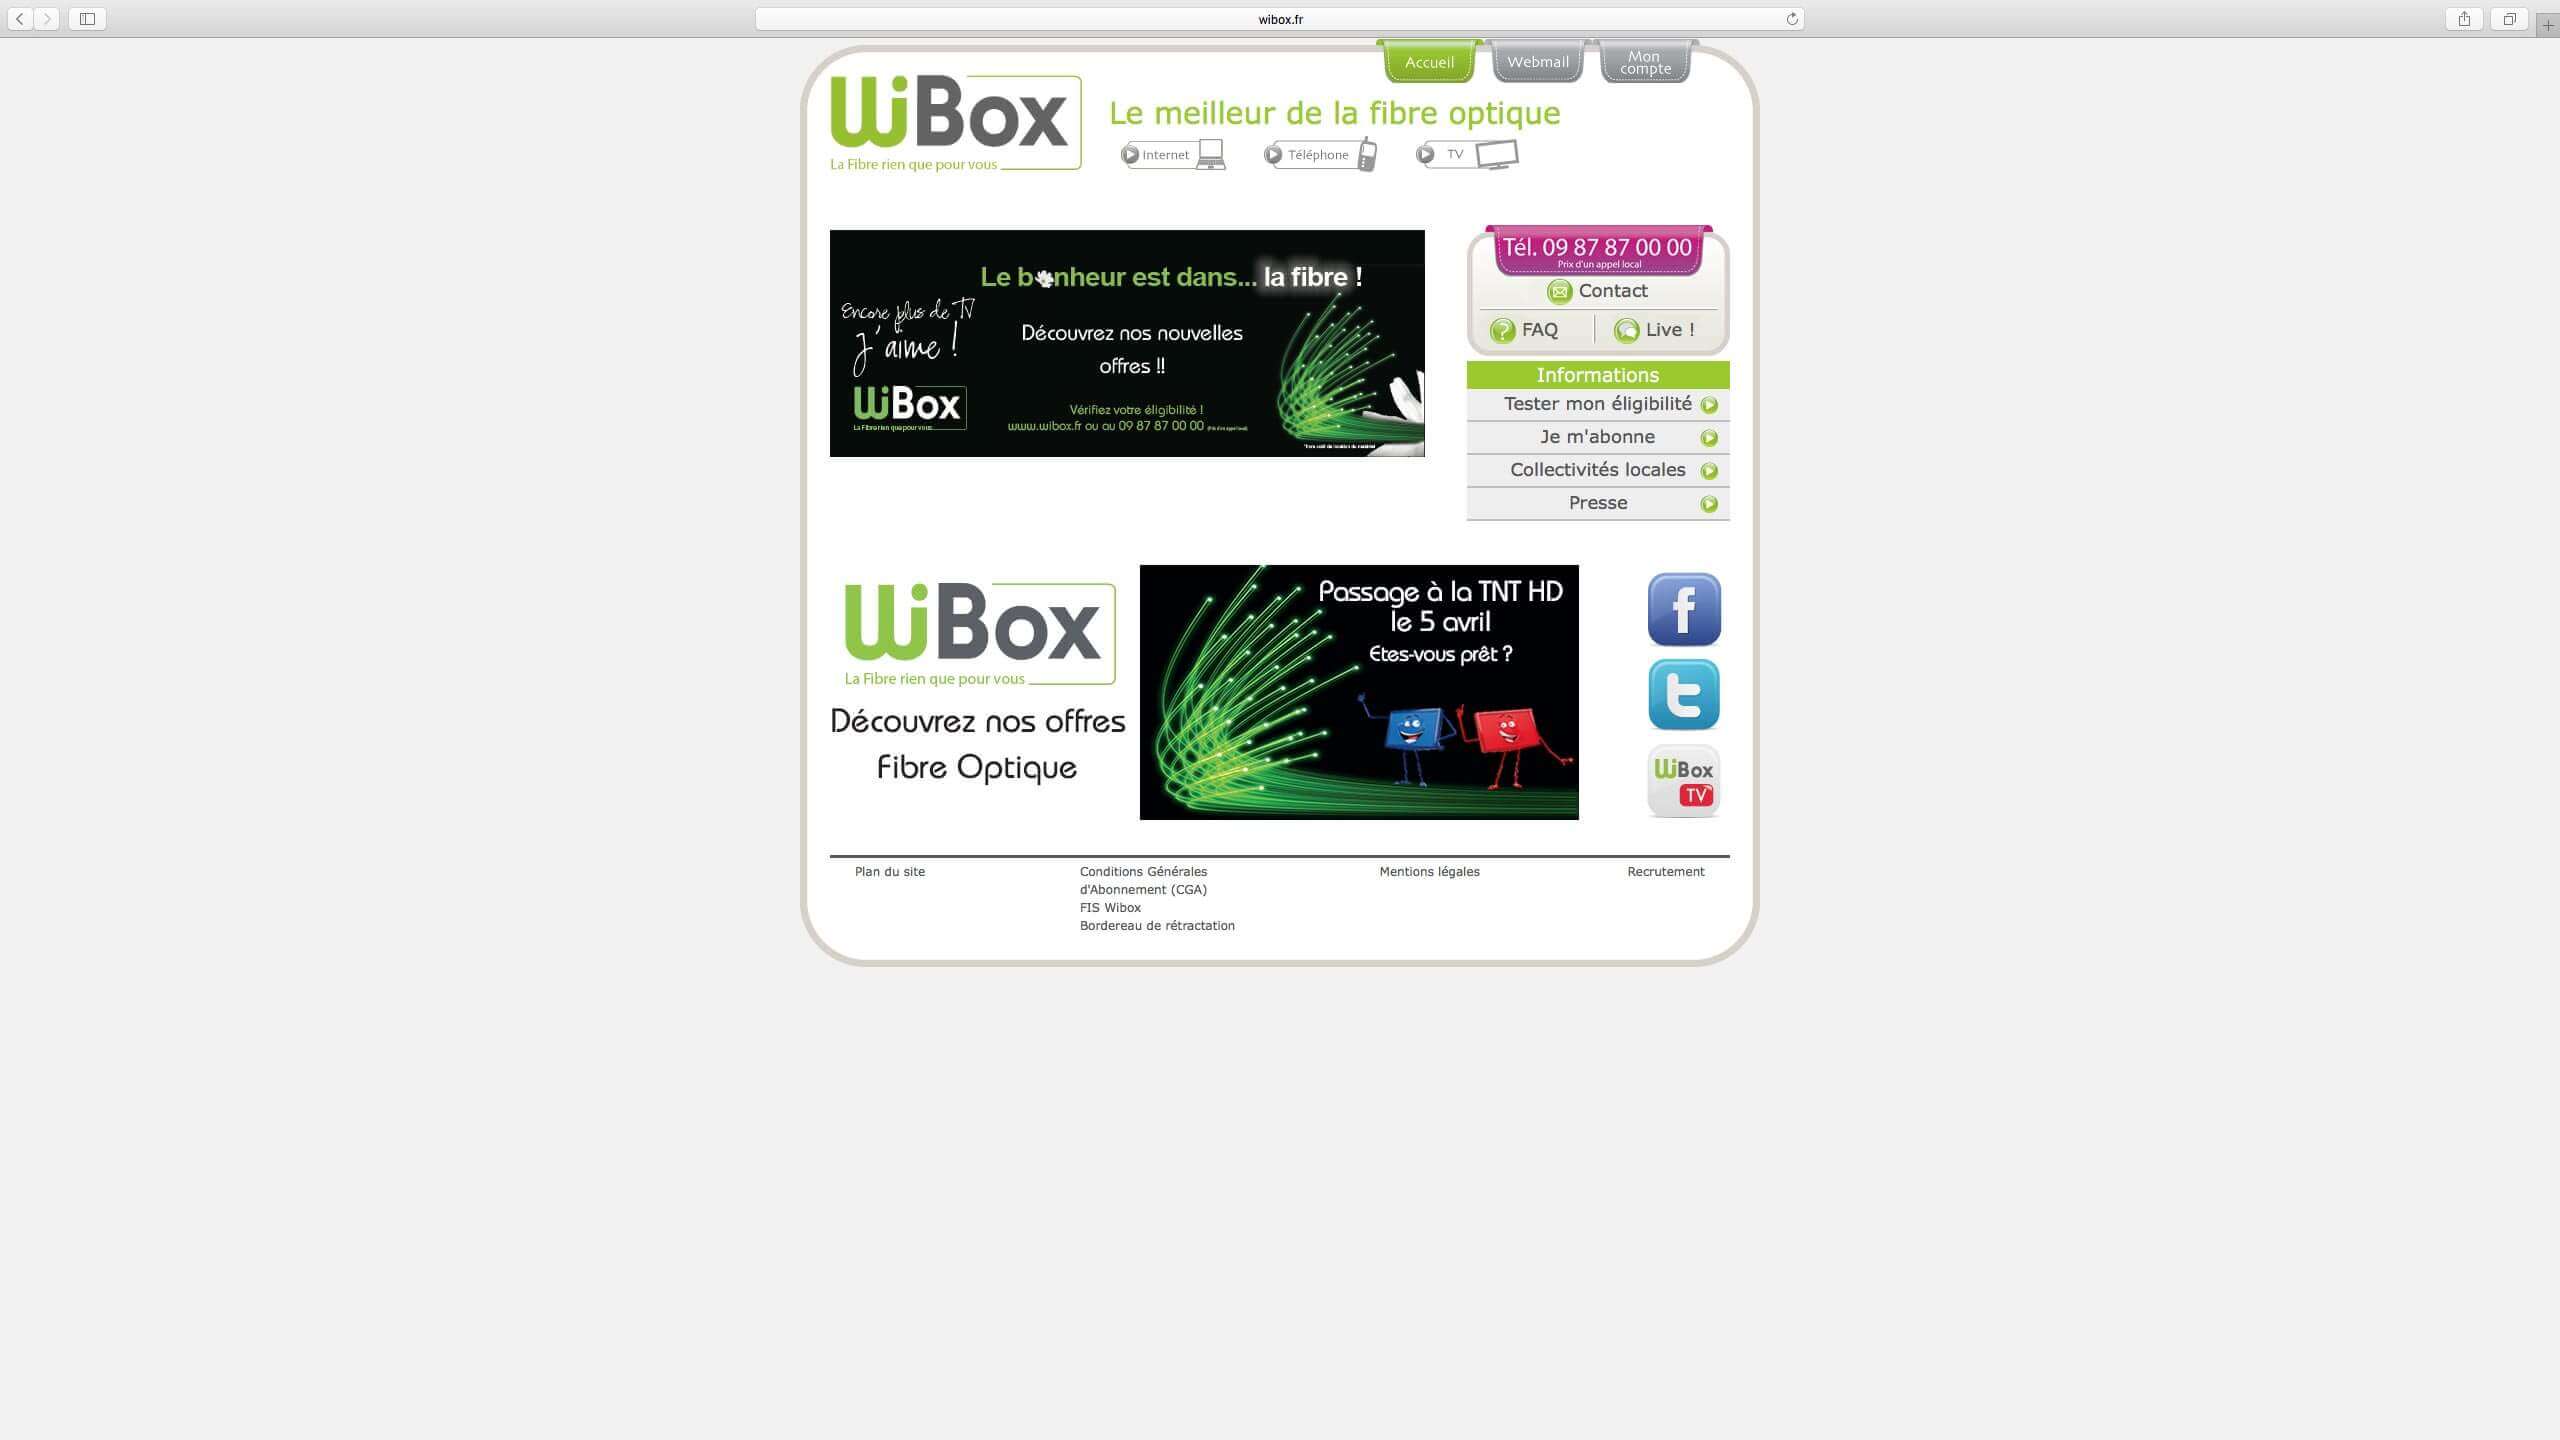 Capture d'écran du site internet Wibox